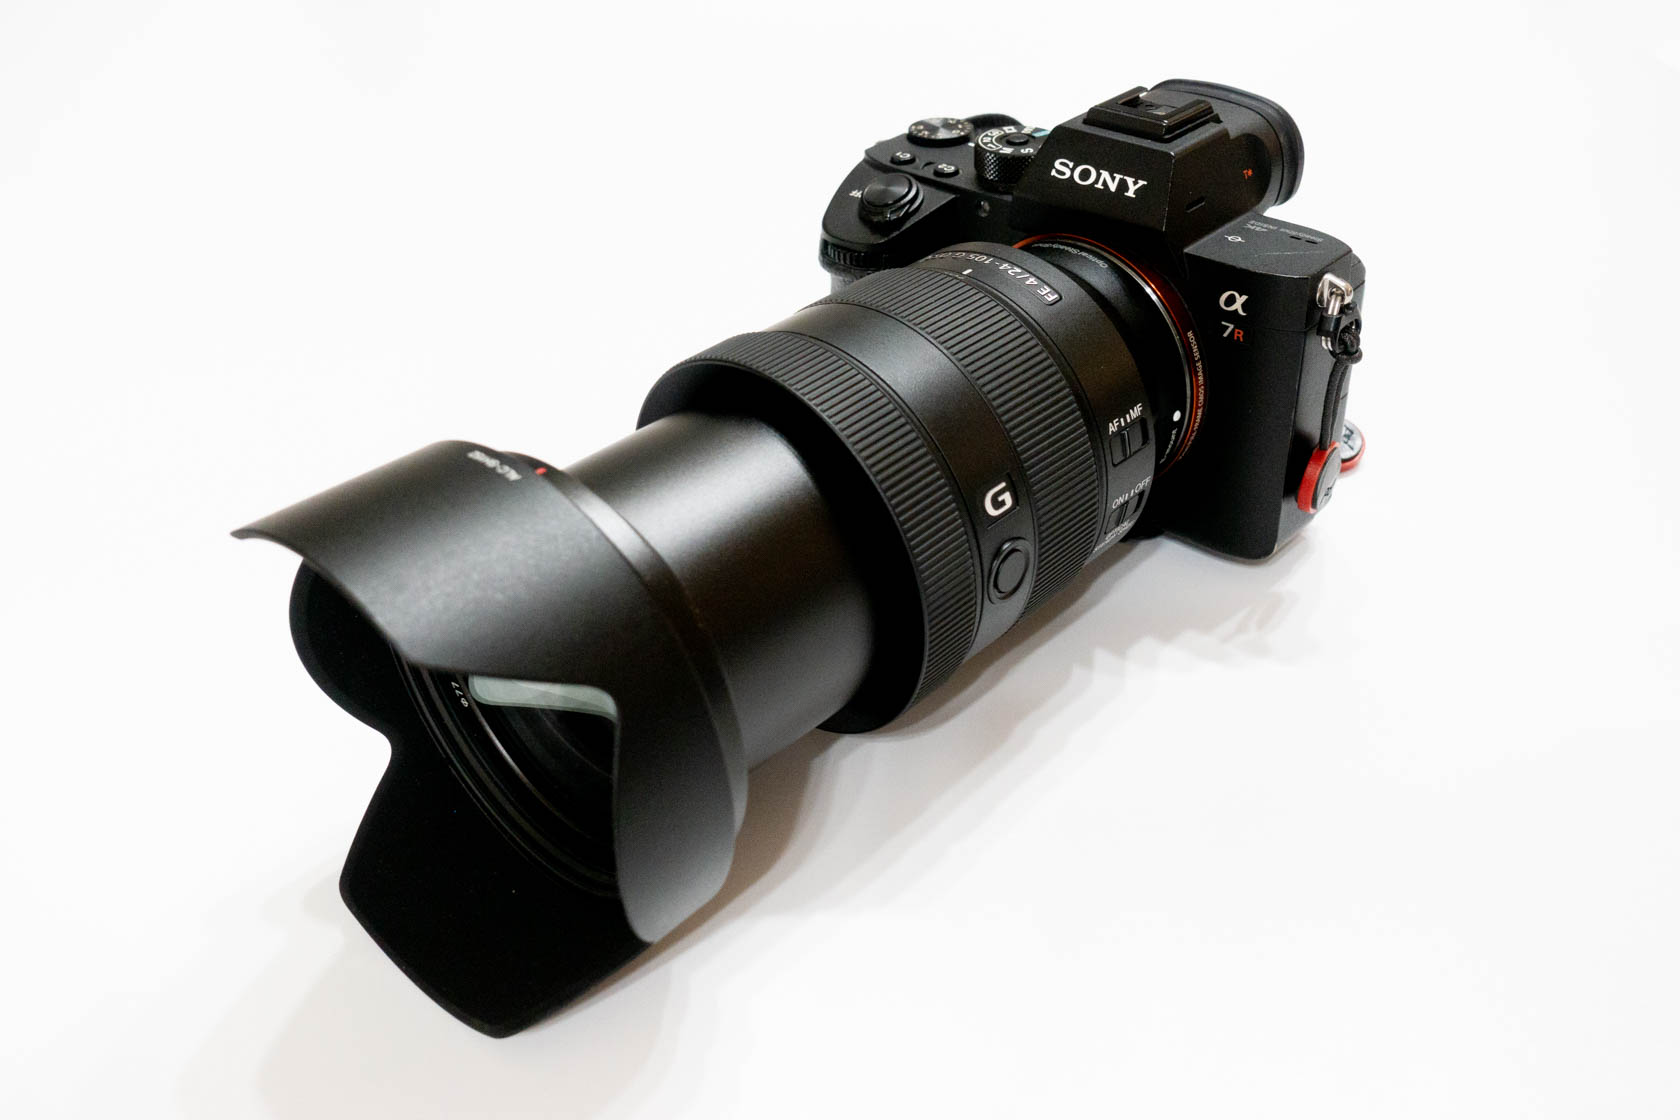 ソニーフルサイズ用レンズ『SEL24105G 24-105mm F4 G』レビュー。【中古】 【並品】 ライカ ズミルックスM 50mm F1.4 E43 ブラック。フル 